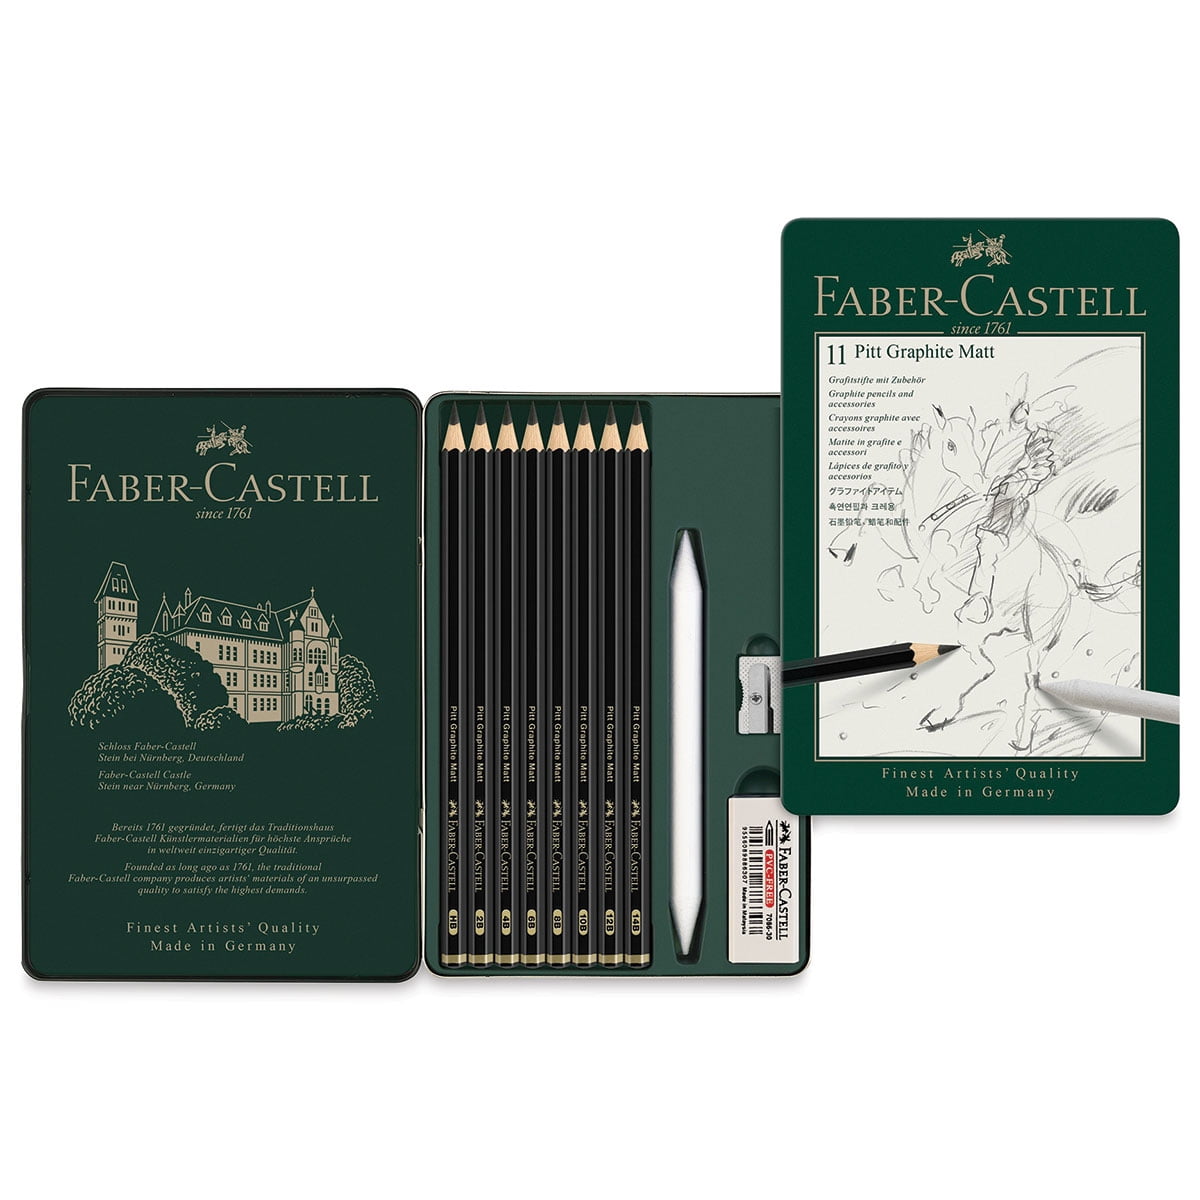 Faber-Castell Pitt Graphite Matte Pencils - Set of 11 